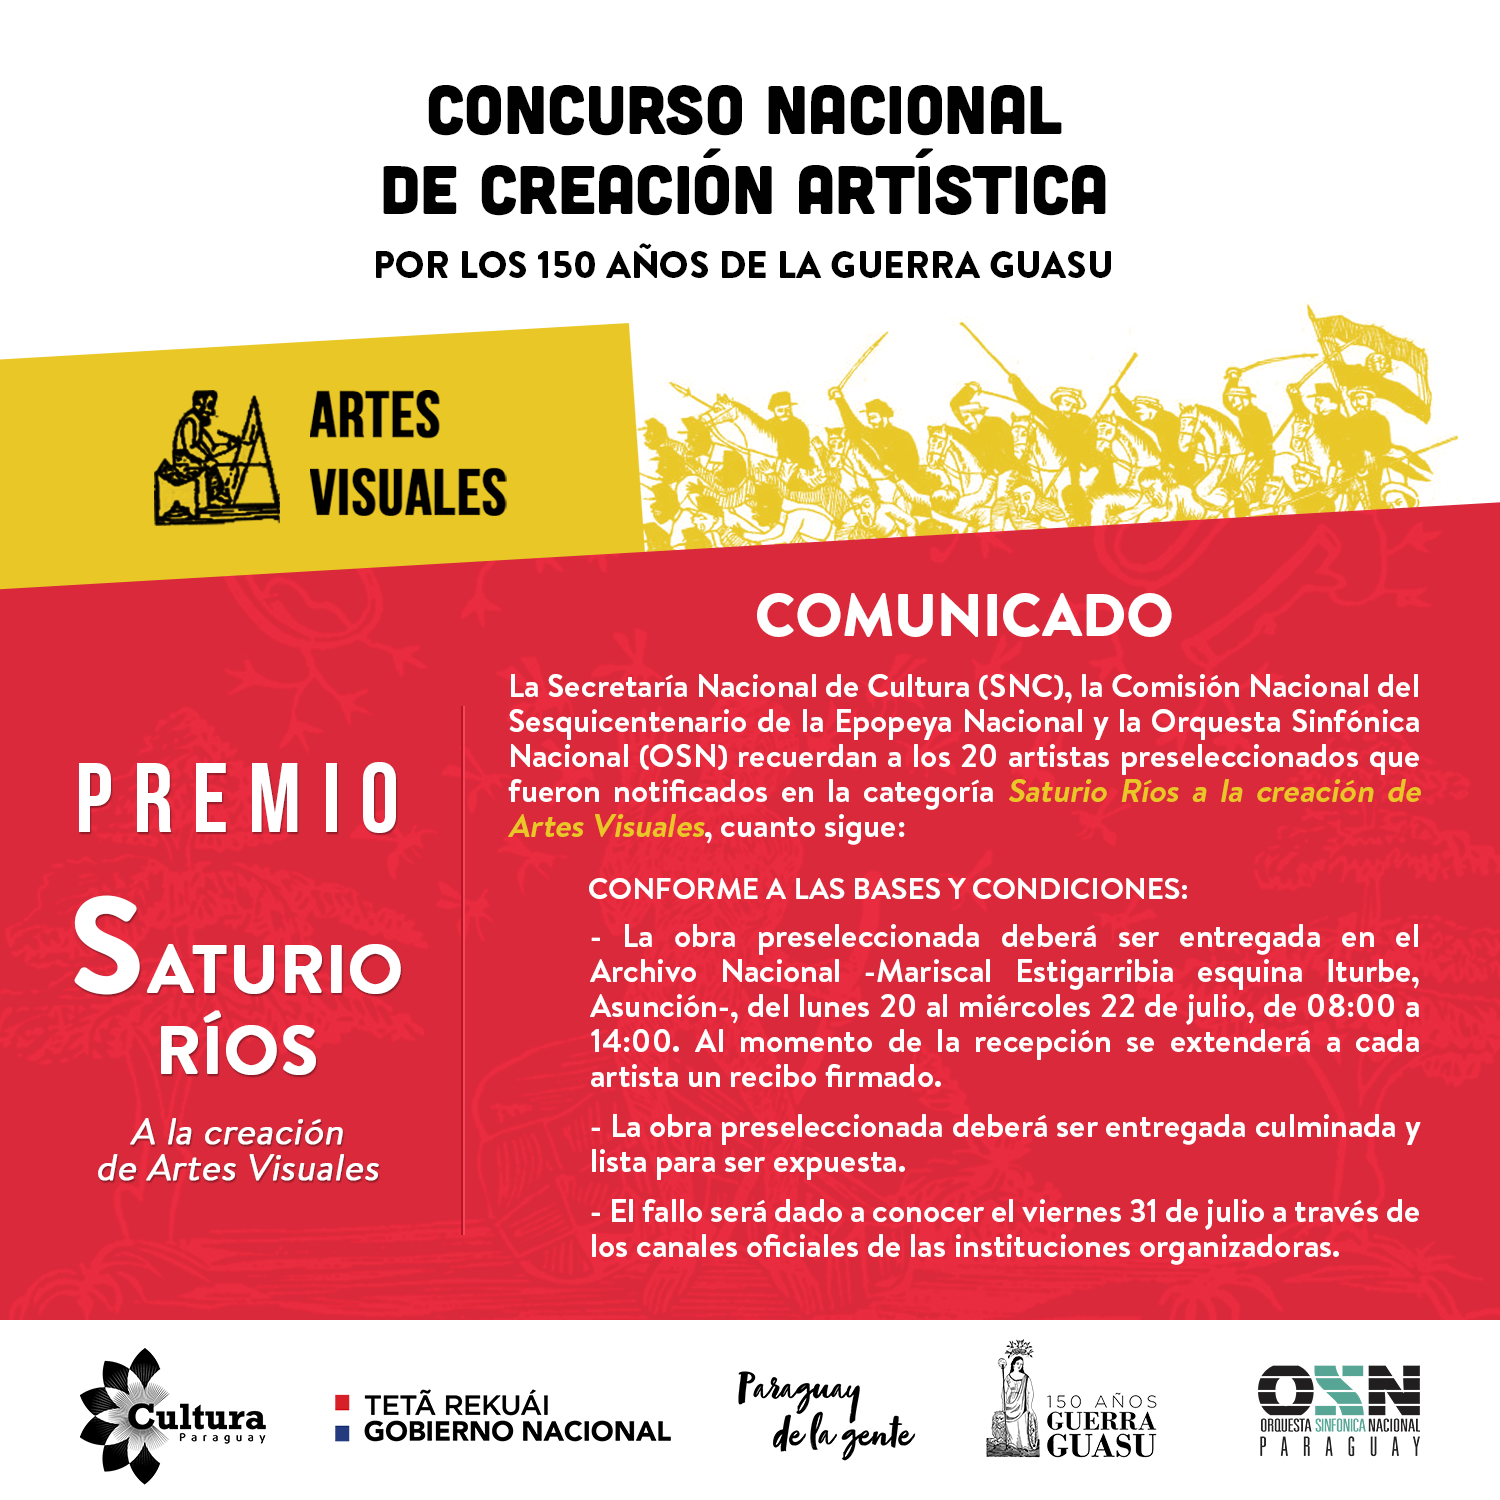 Comunicado para obras preseleccionadas: Concurso Nacional de Creación Artística por los 150 años de la Guerra Guasu imagen